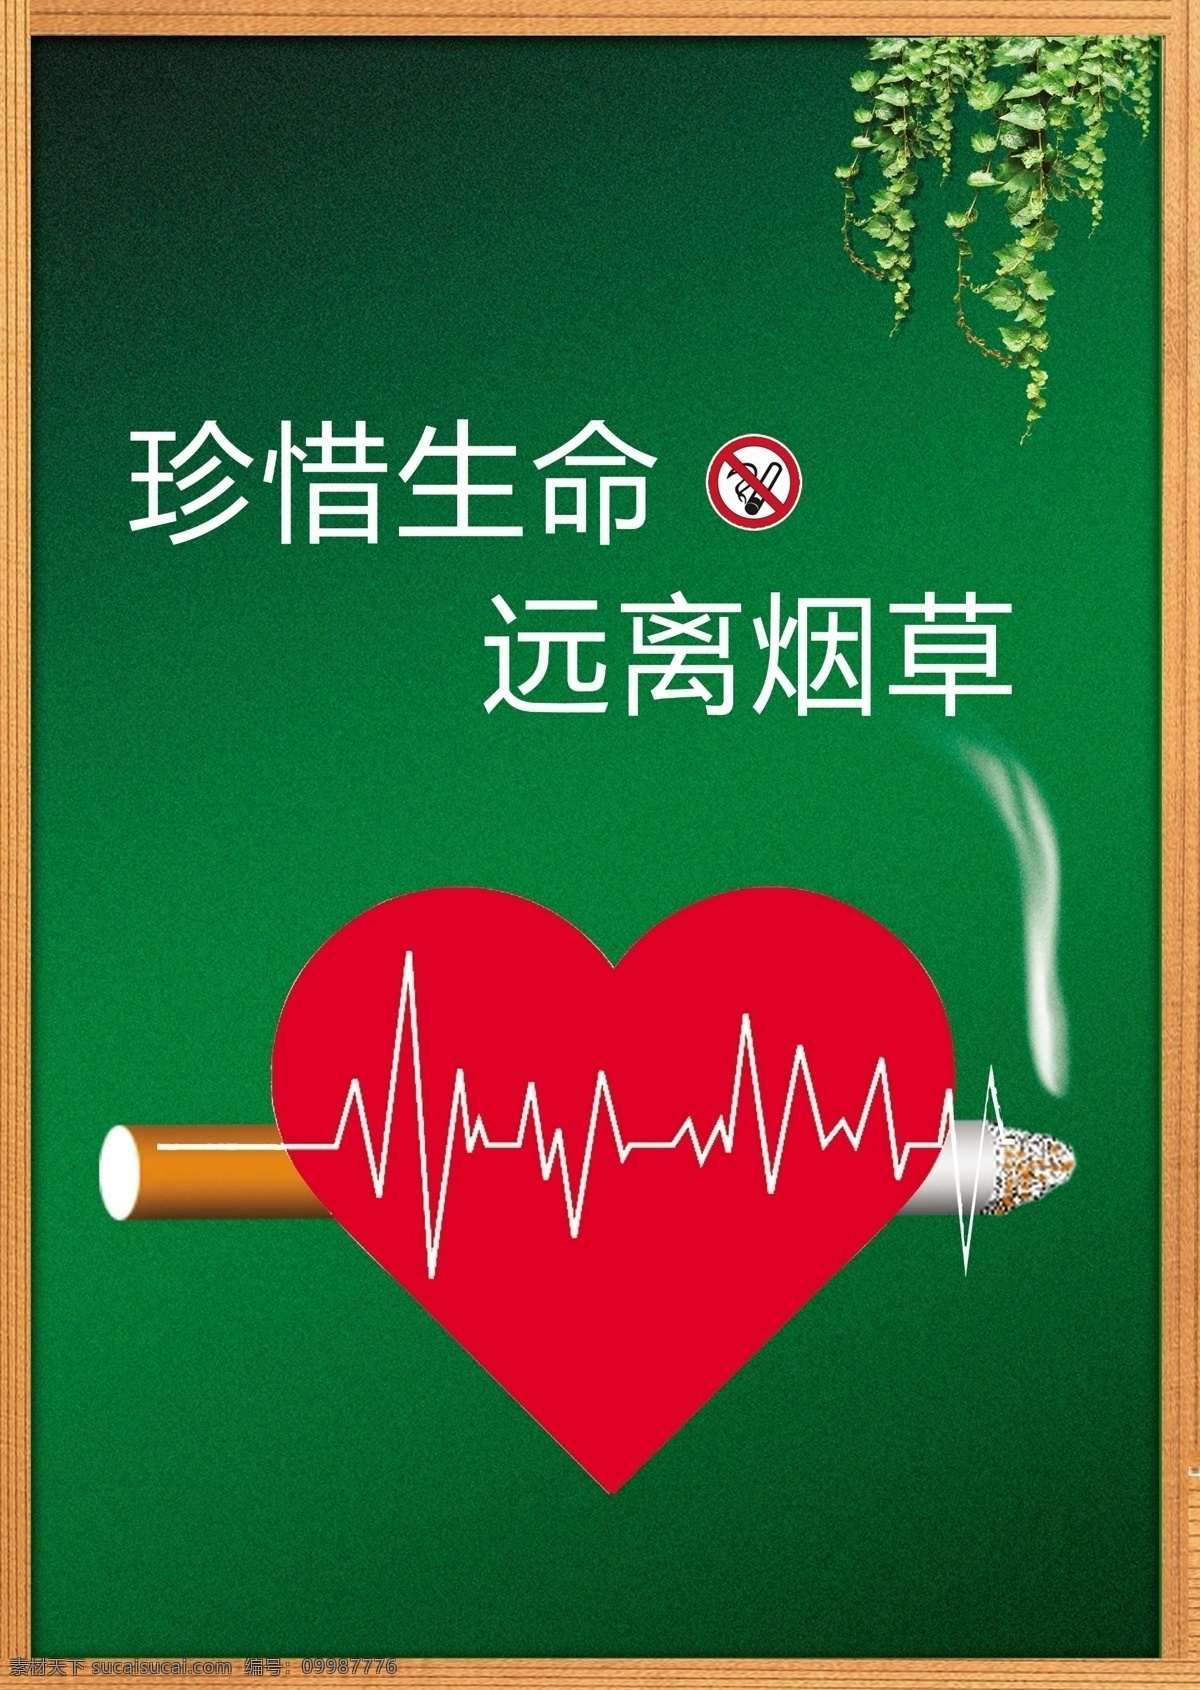 戒烟广告 公益广告 珍惜生命 远离烟草 绿色底色 系列广告 戒烟海报 广告设计模板 源文件